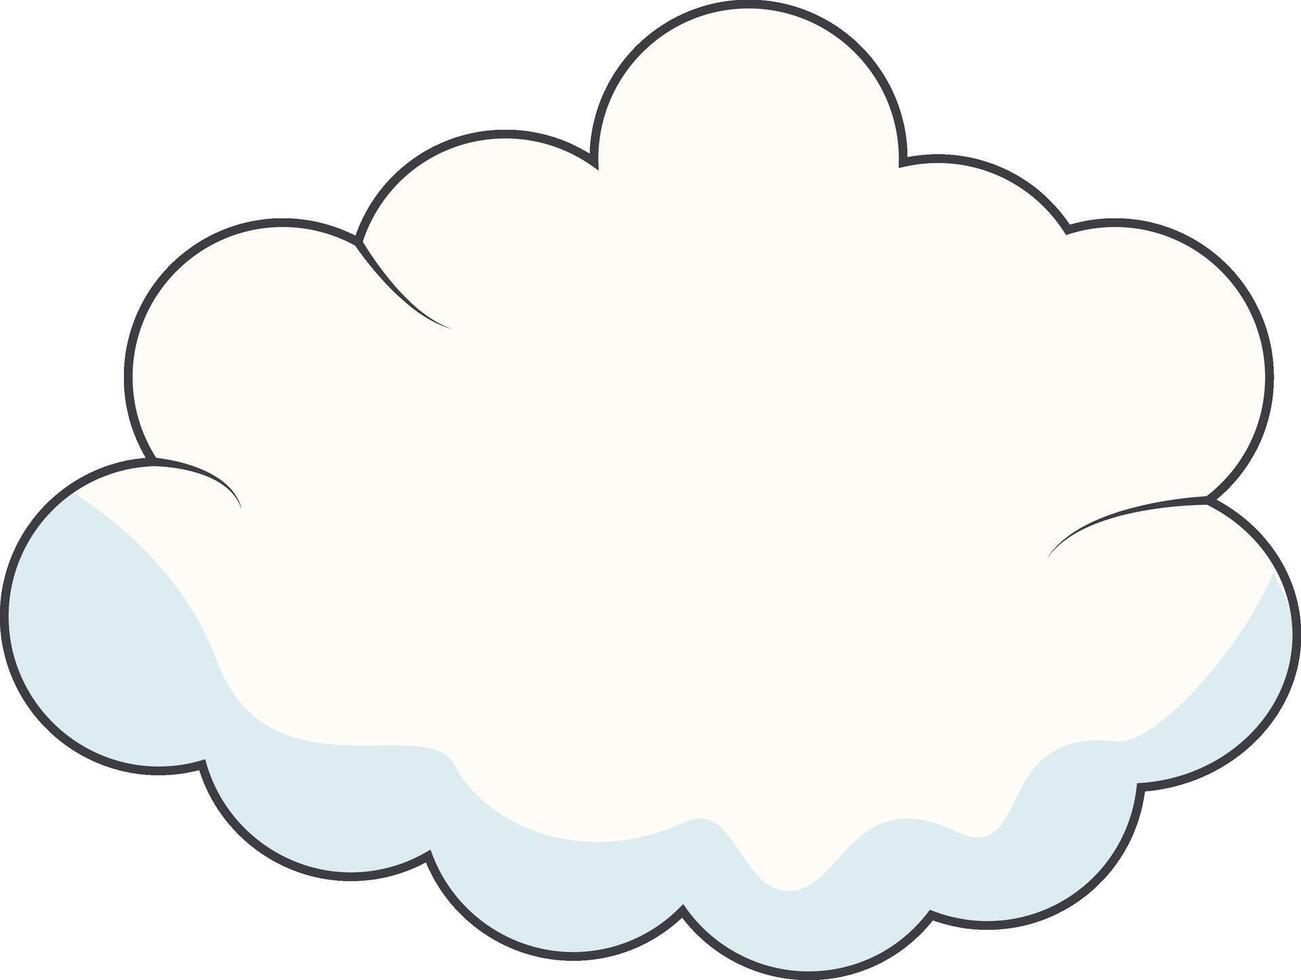 Karikatur Wolken auf Weiß Hintergrund. zum Comic Ornament vektor